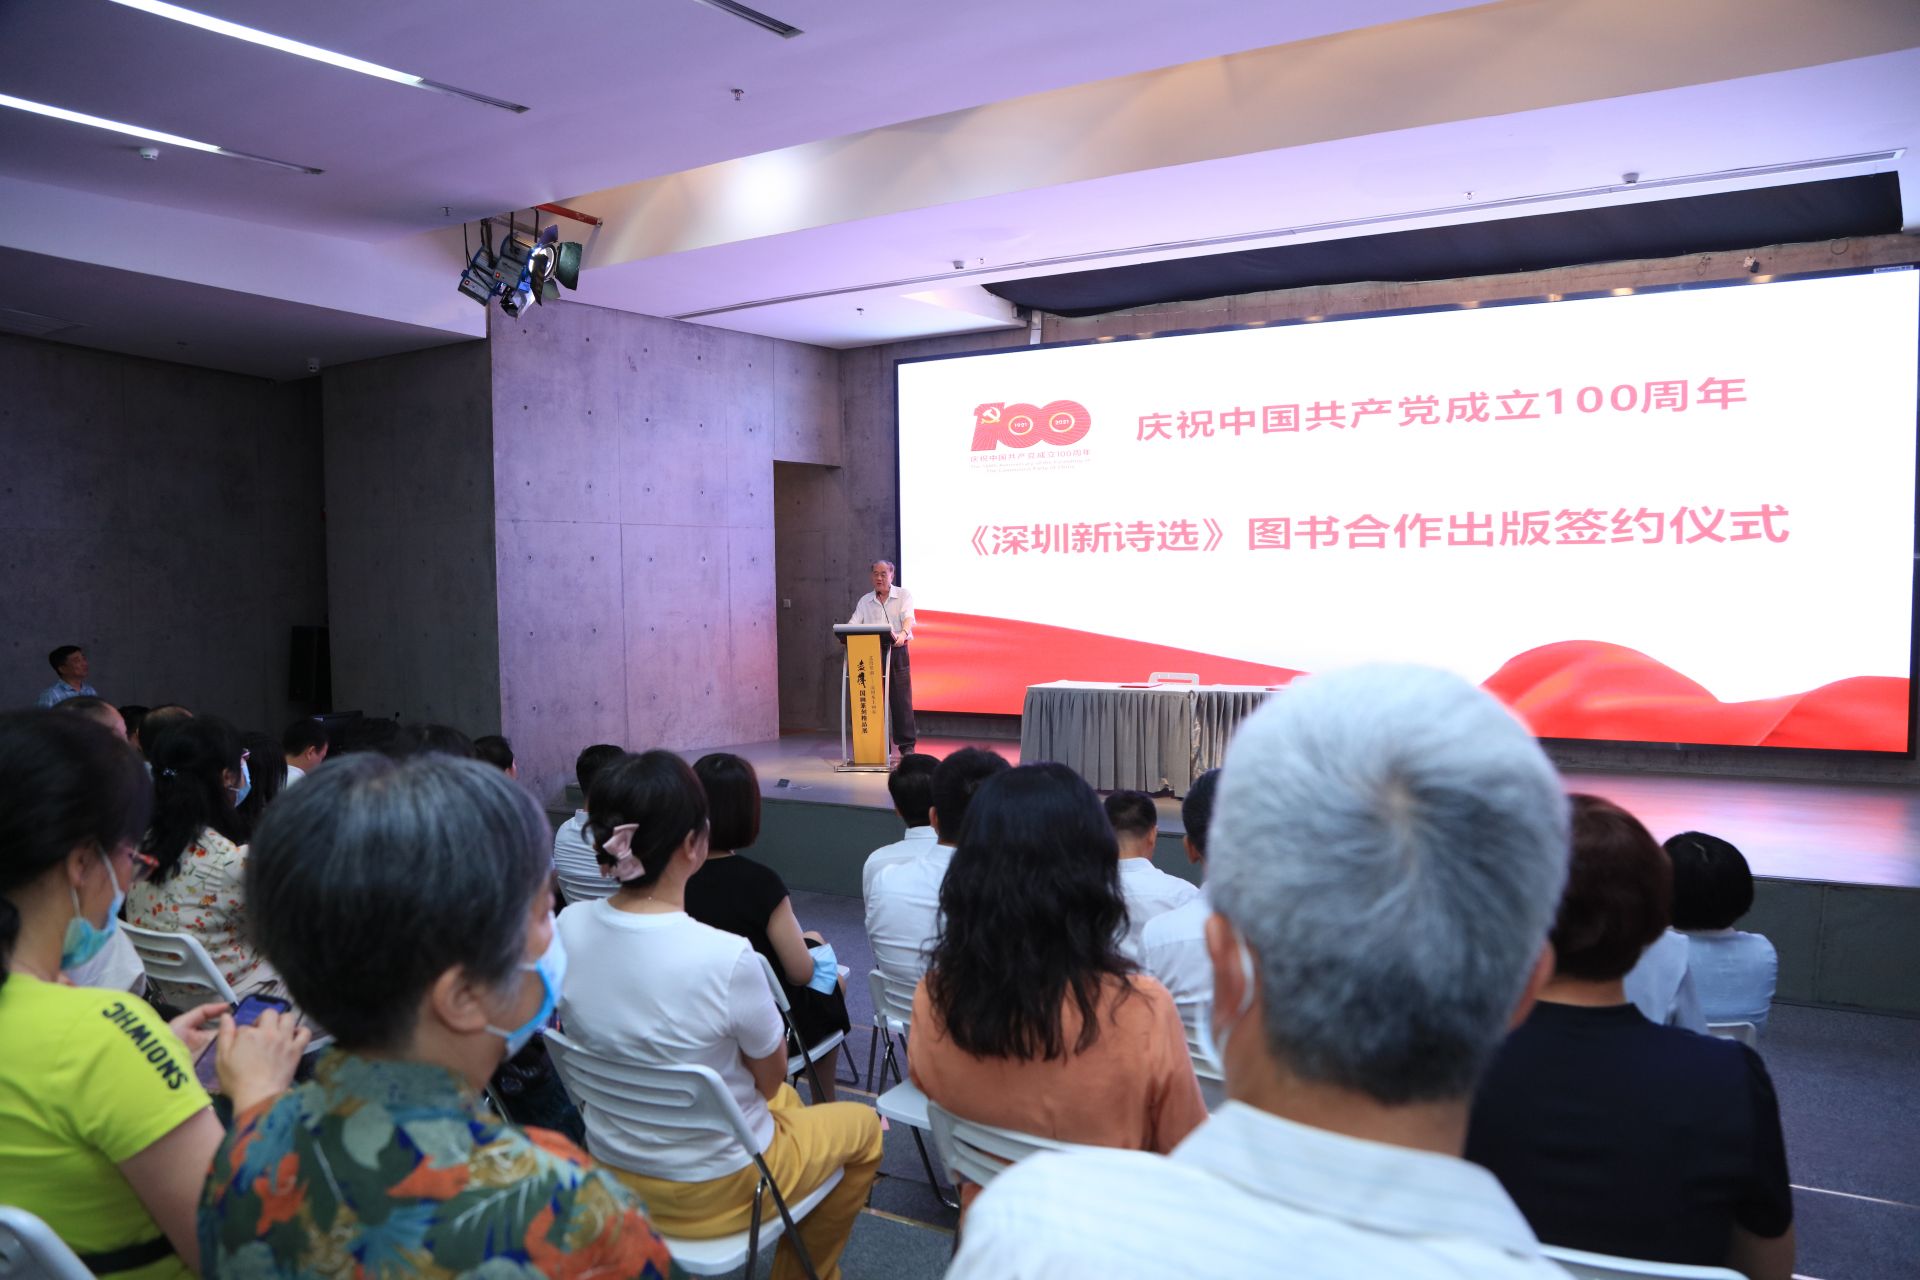 《深圳新诗选》合作出版签约仪式于罗湖美术馆举行  